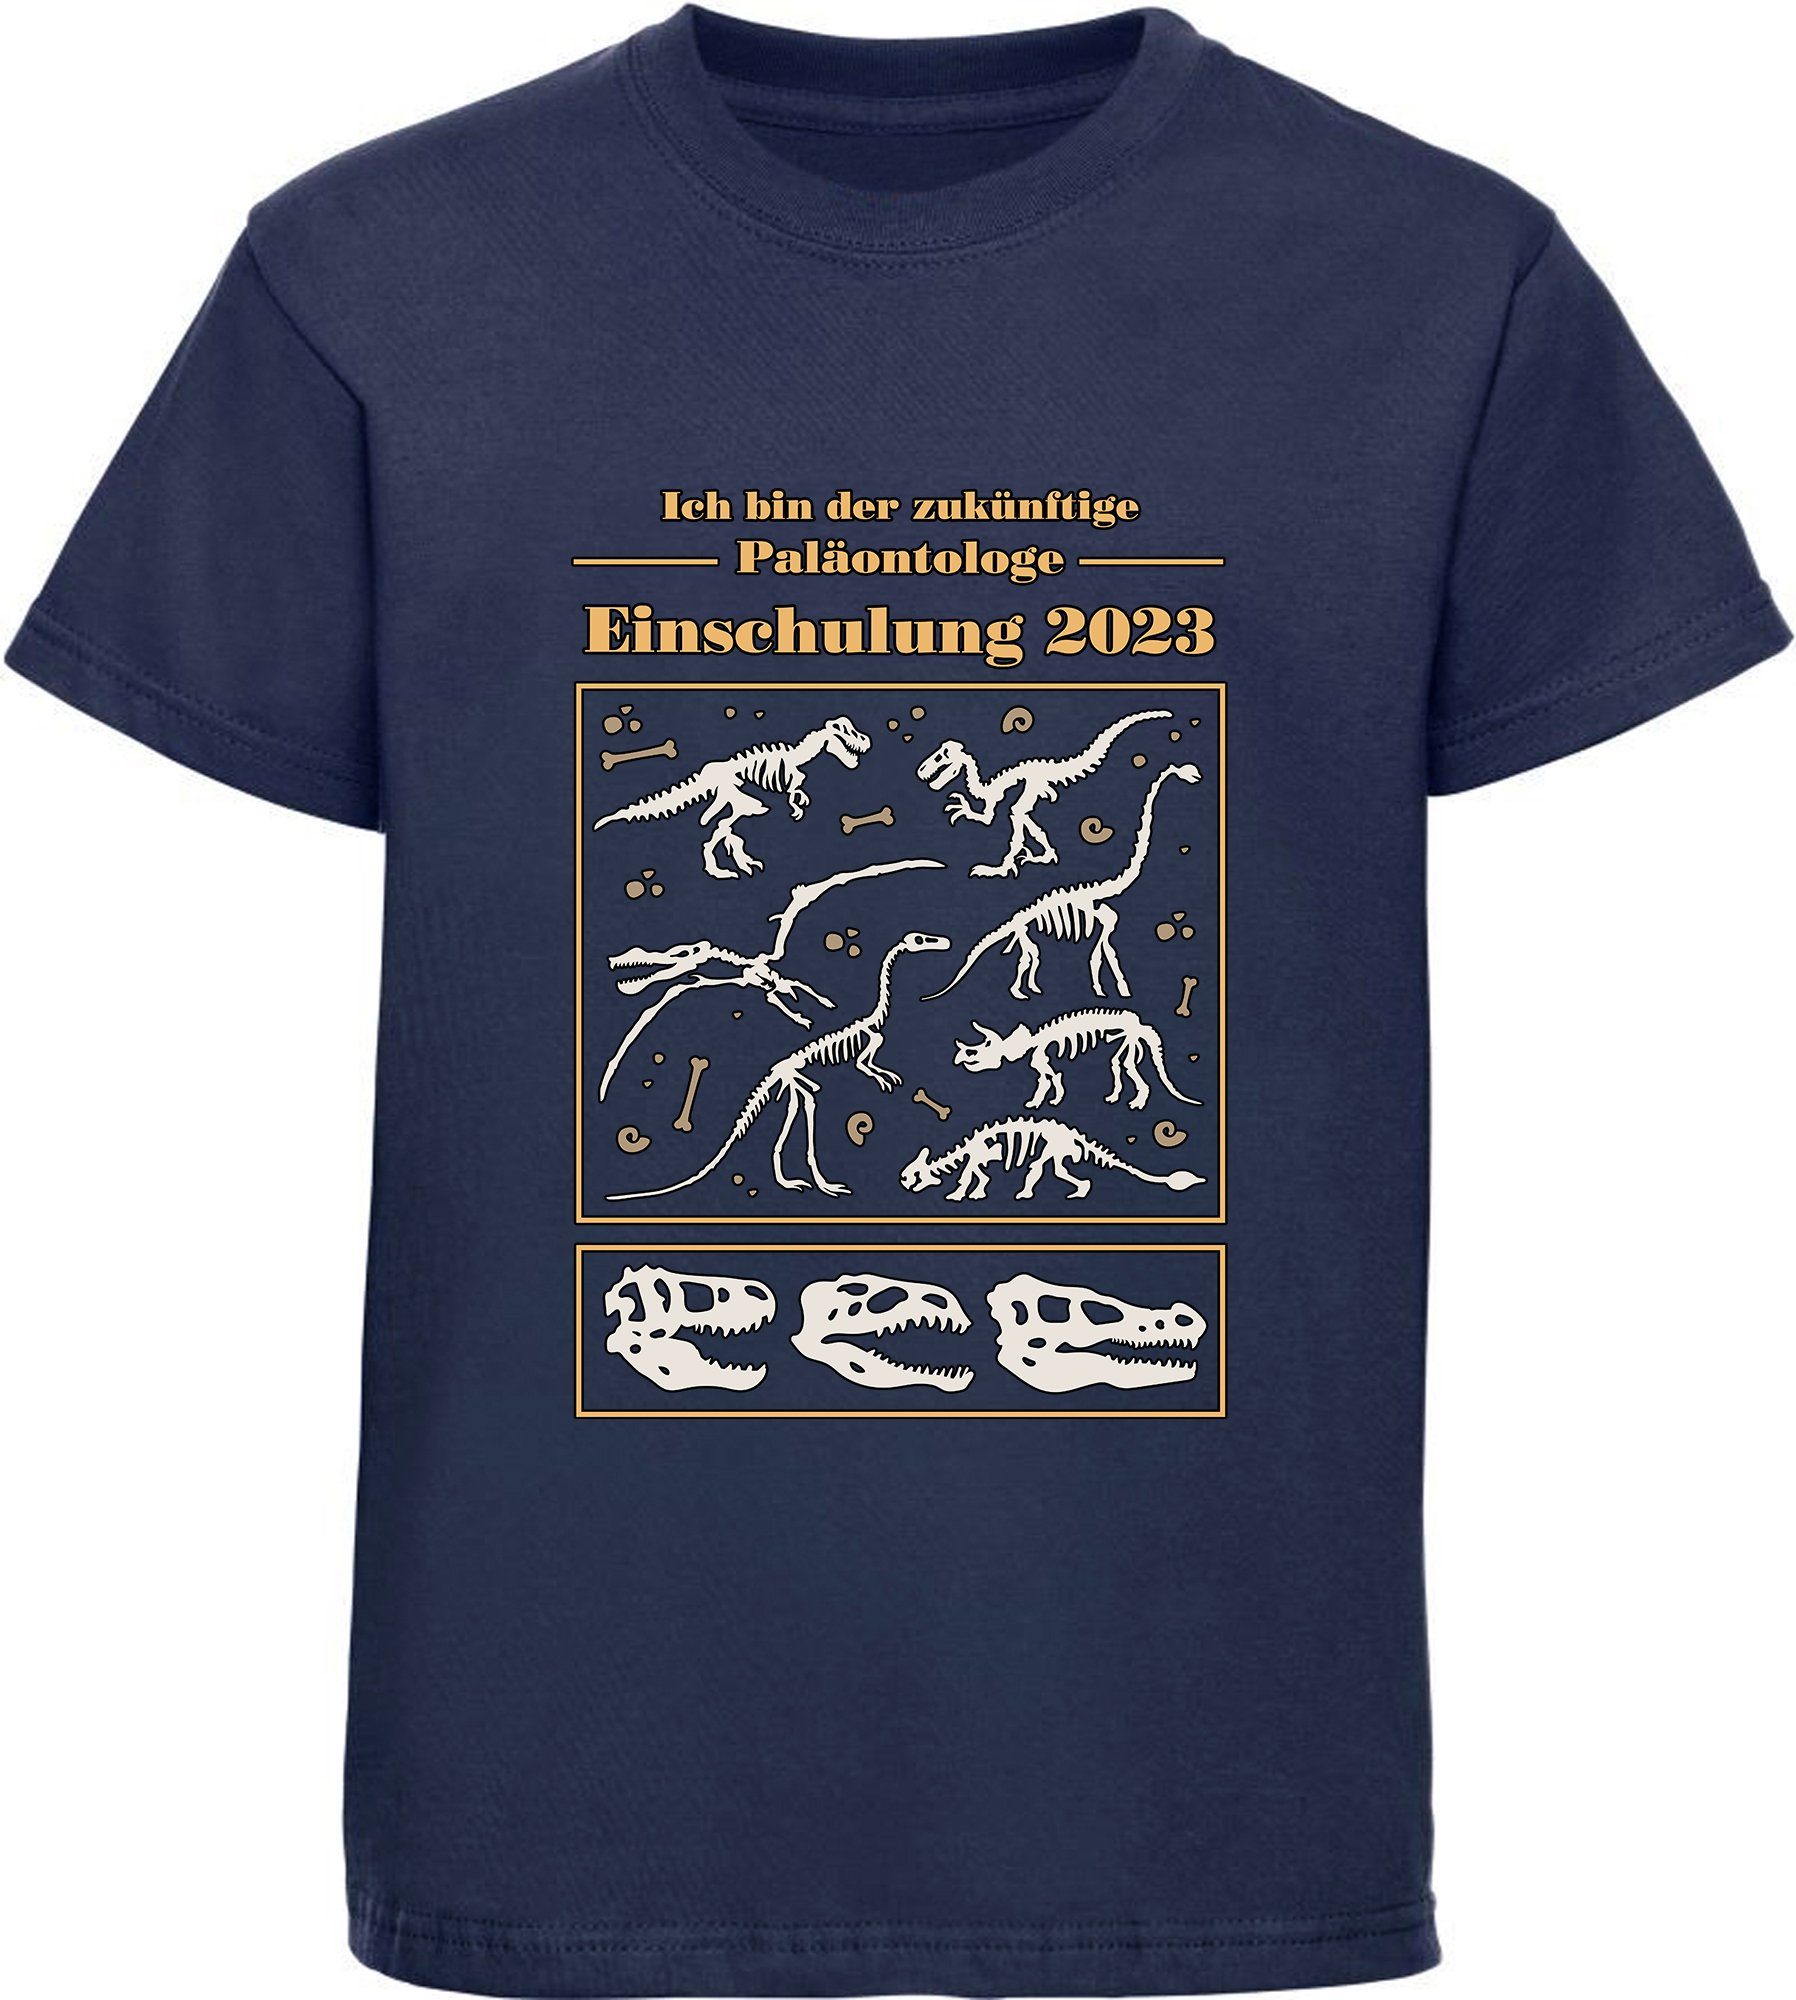 MyDesign24 Print-Shirt bedrucktes Kinder T-Shirt zukünftige Paläontologe mit Dino Skeletten Baumwollshirt Einschulung 2023, schwarz, weiß, rot, blau, i36 navy blau